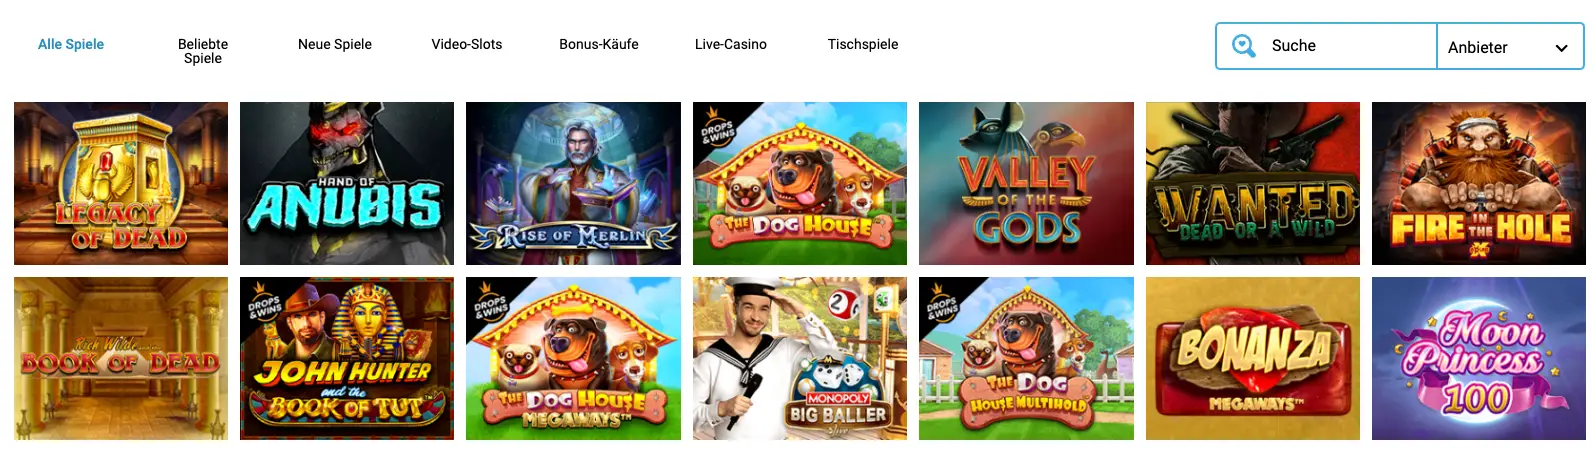 Evolve Casino alle Spiele in der Übersicht